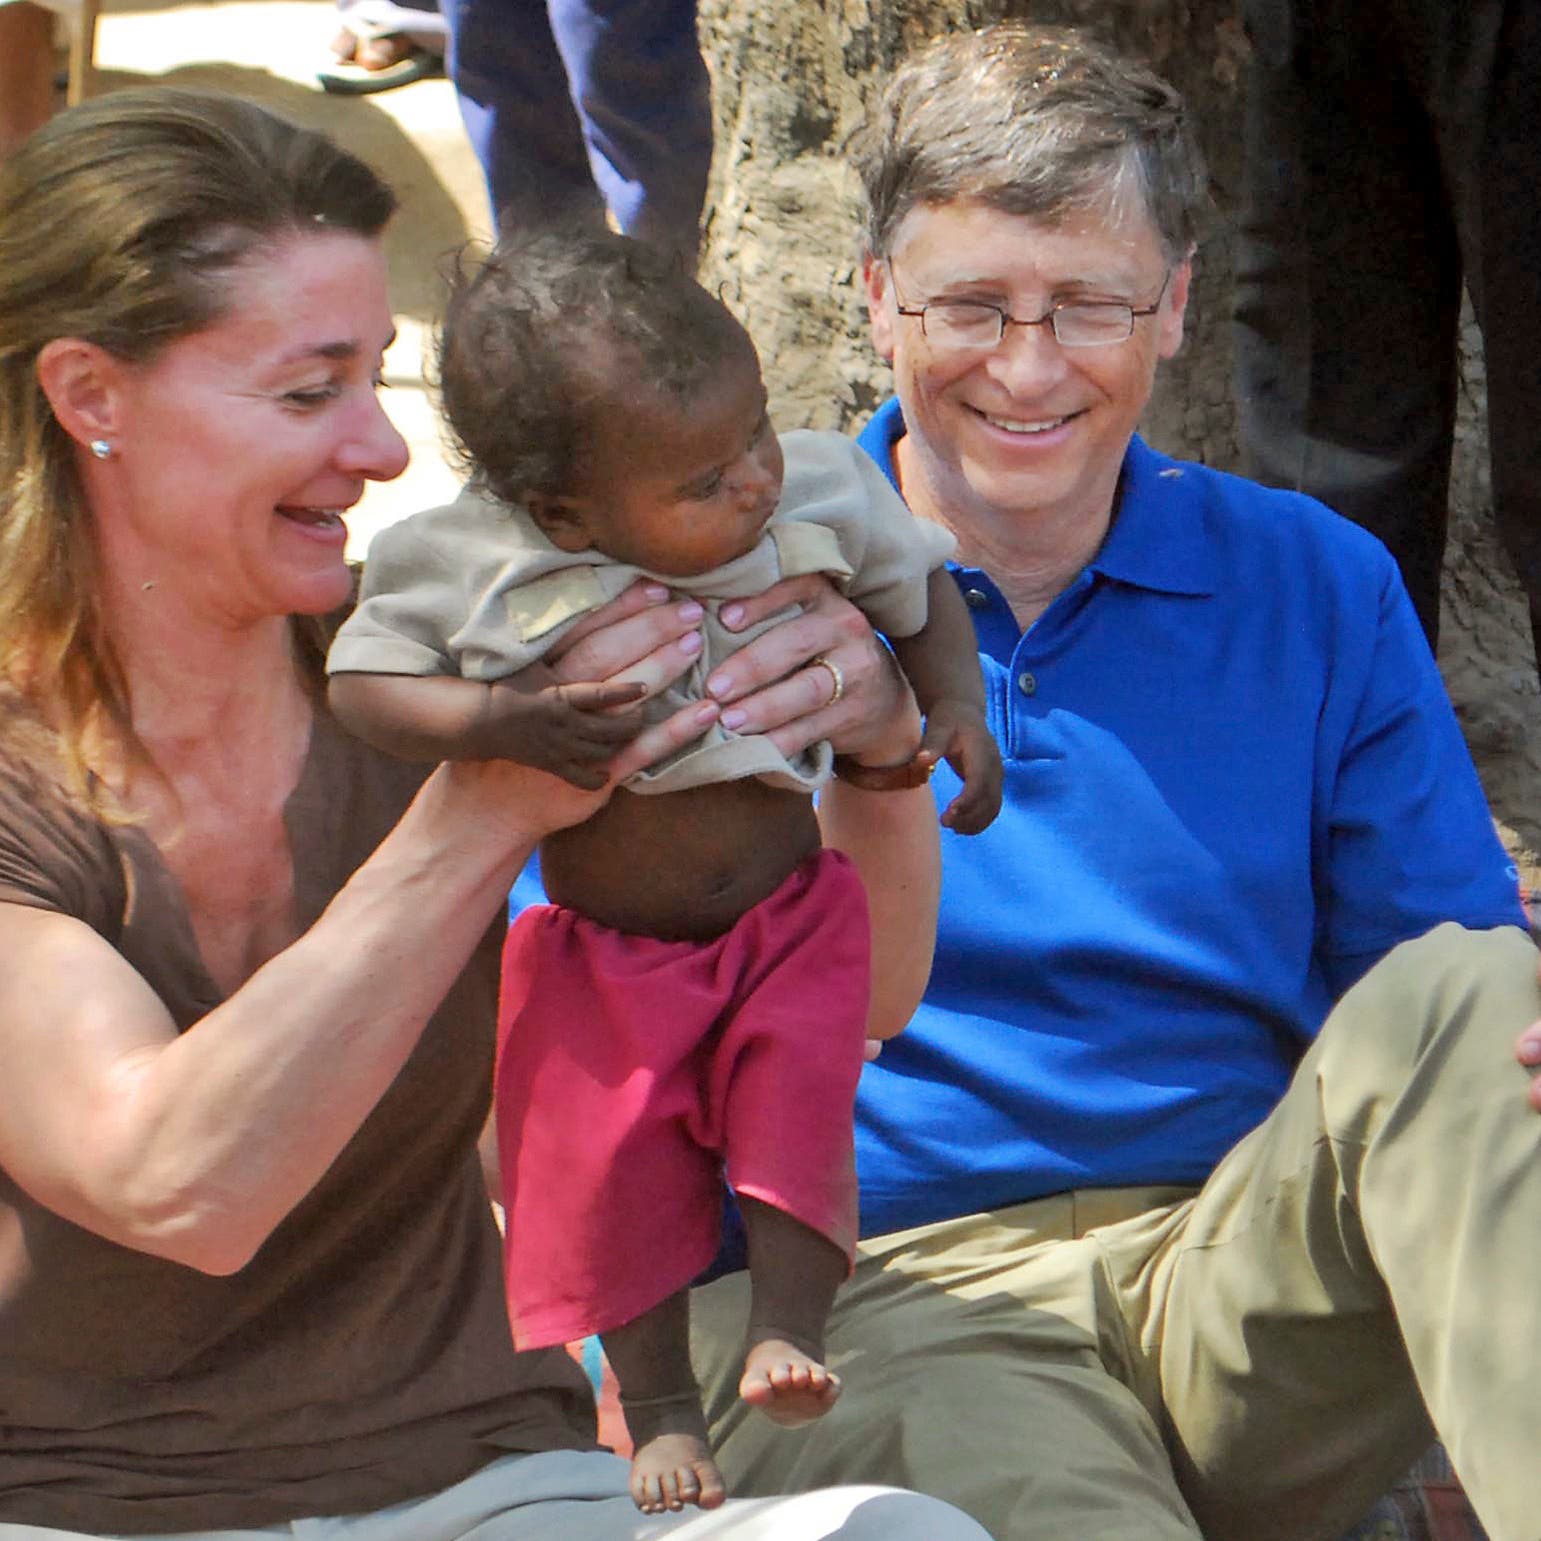 Bill and Melinda Gates divorce could shake up philanthropy